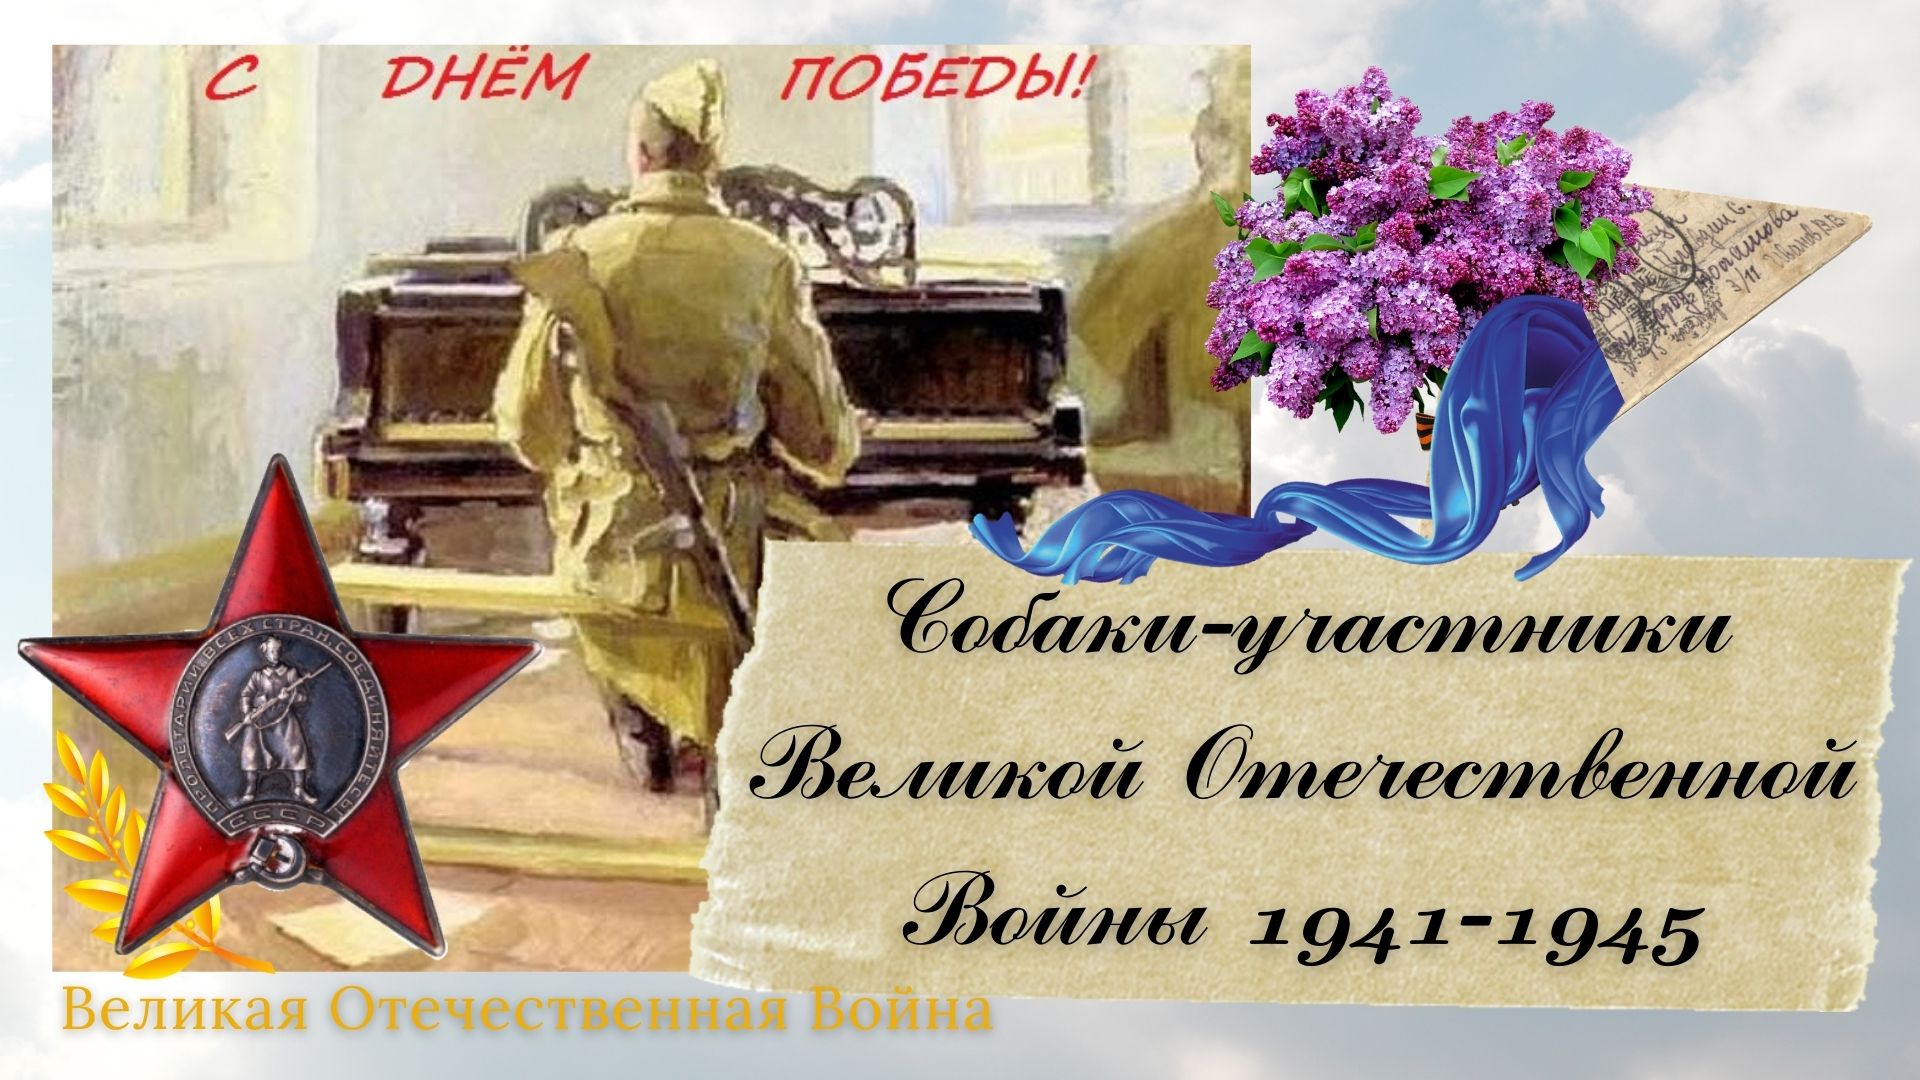 Собаки-участники Великой Отечественной Войны 1941-1945.